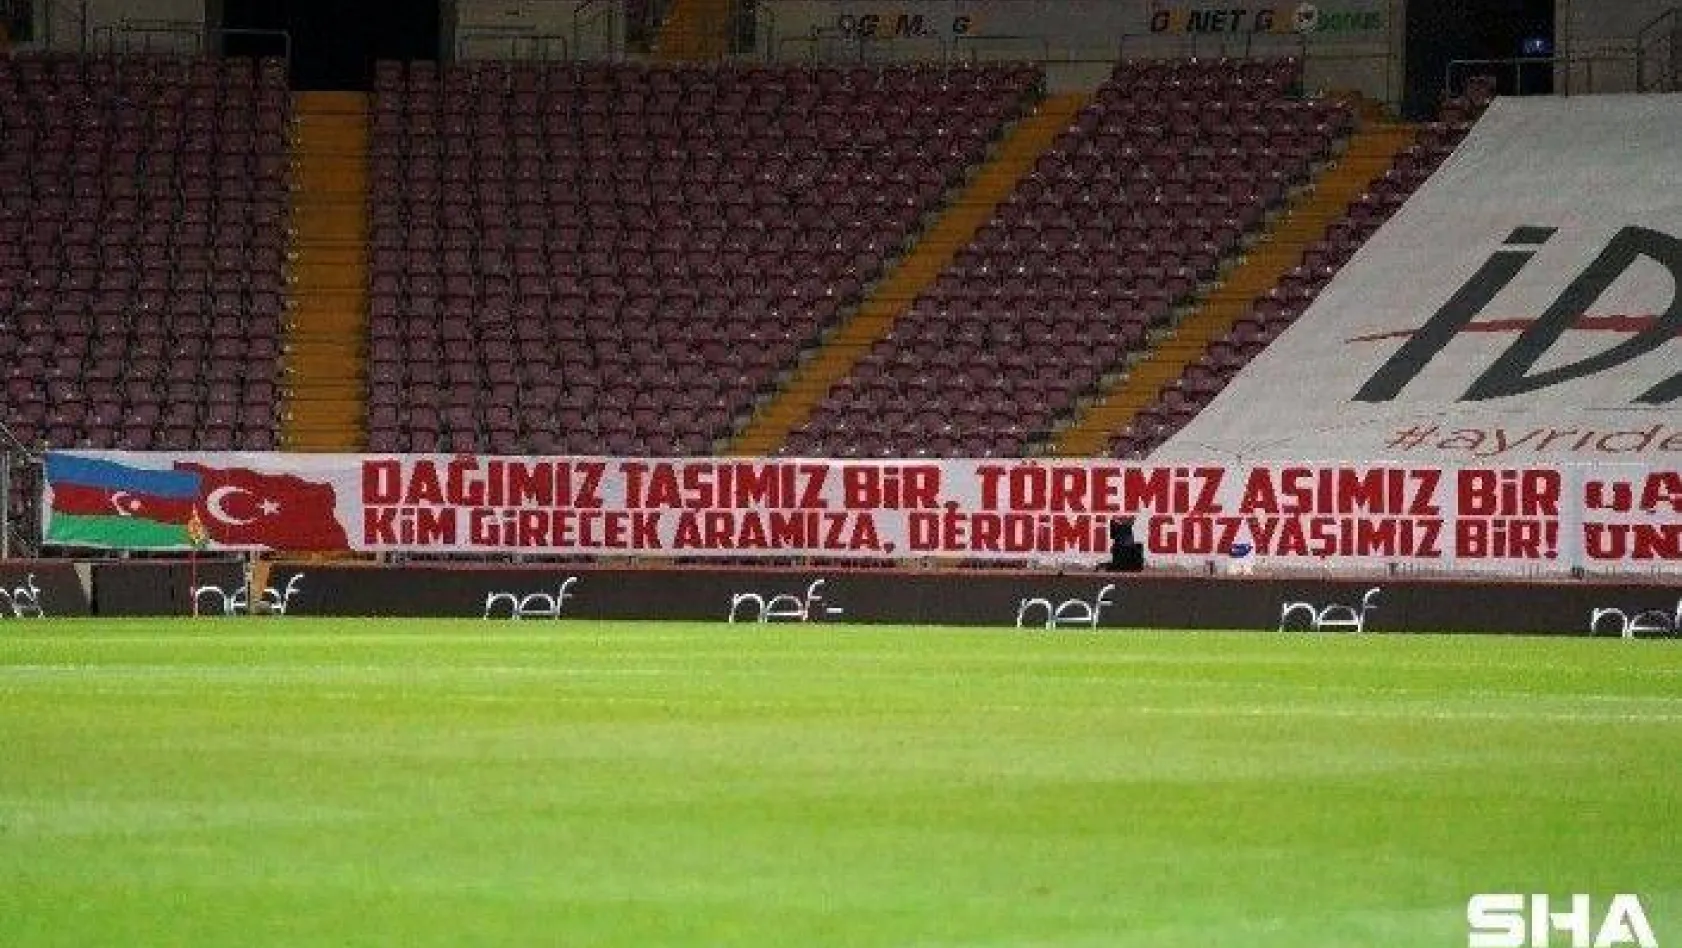 Süper Lig: Galatasaray: 0 - Aytemiz Alanyaspor: 0 (Maç devam ediyor)